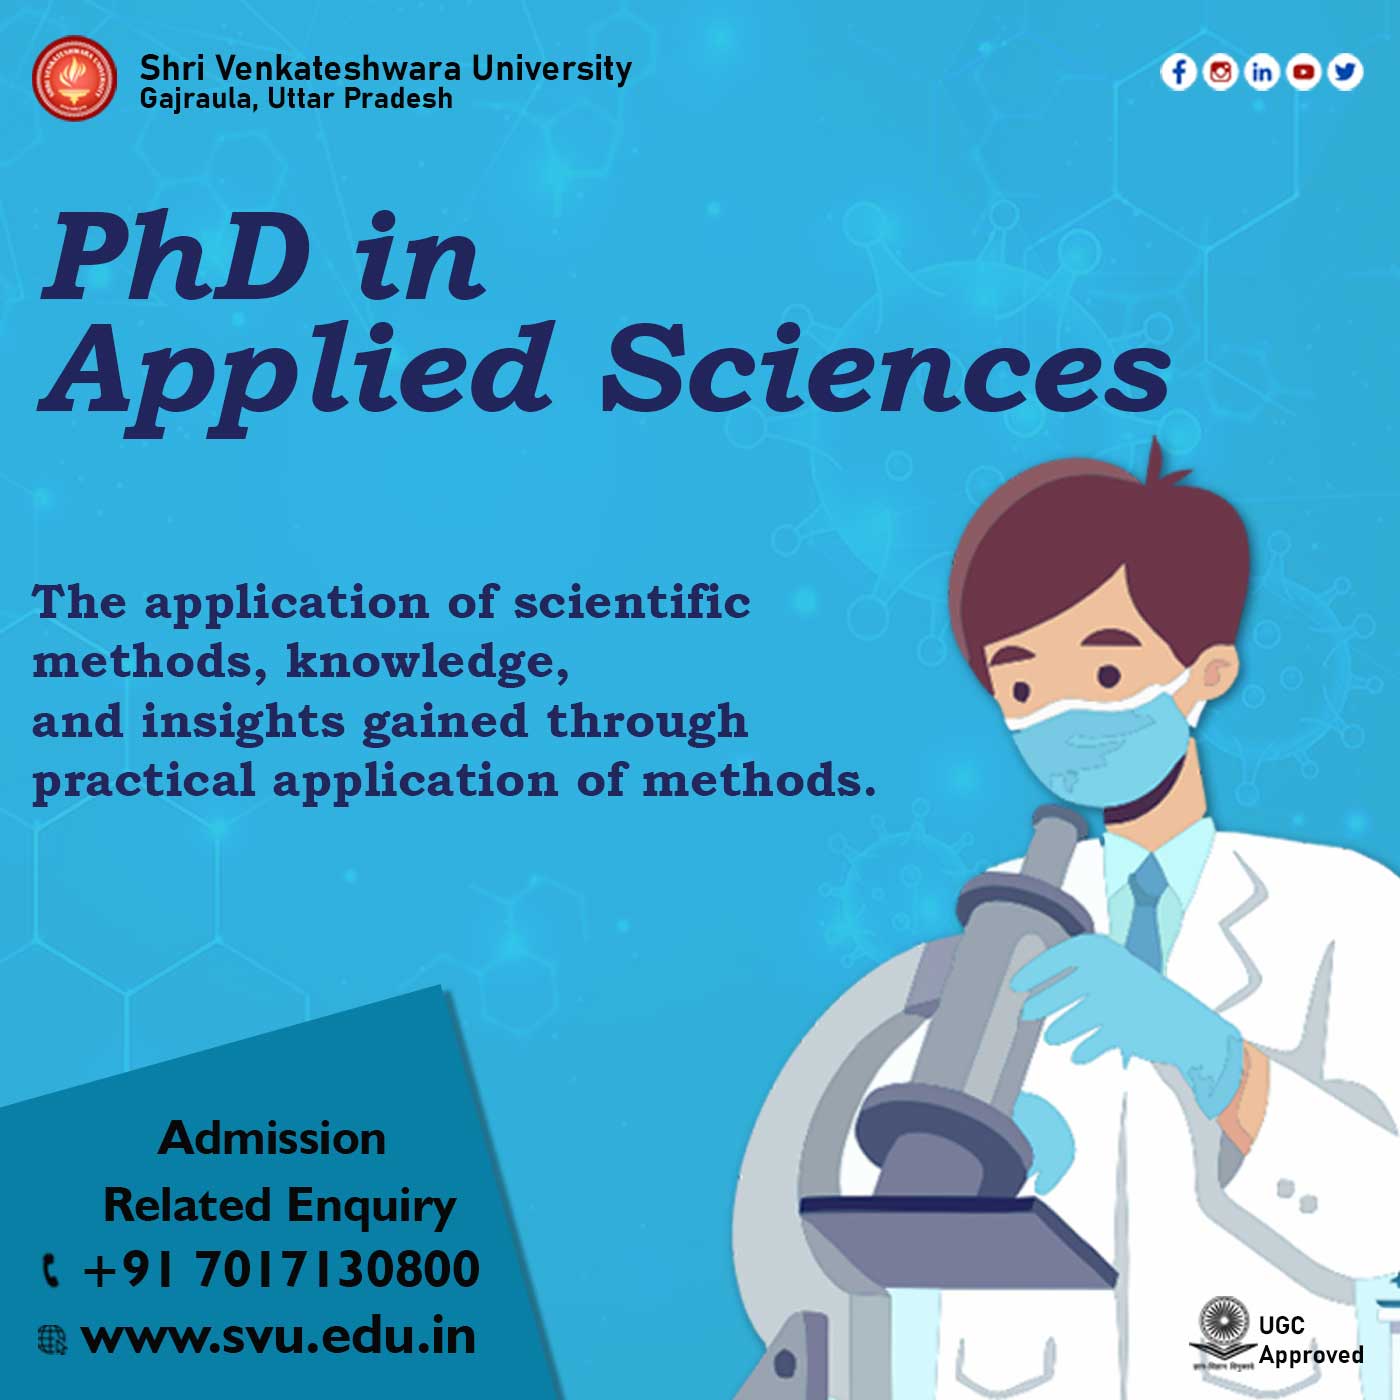 Ph.D Applied Sciences